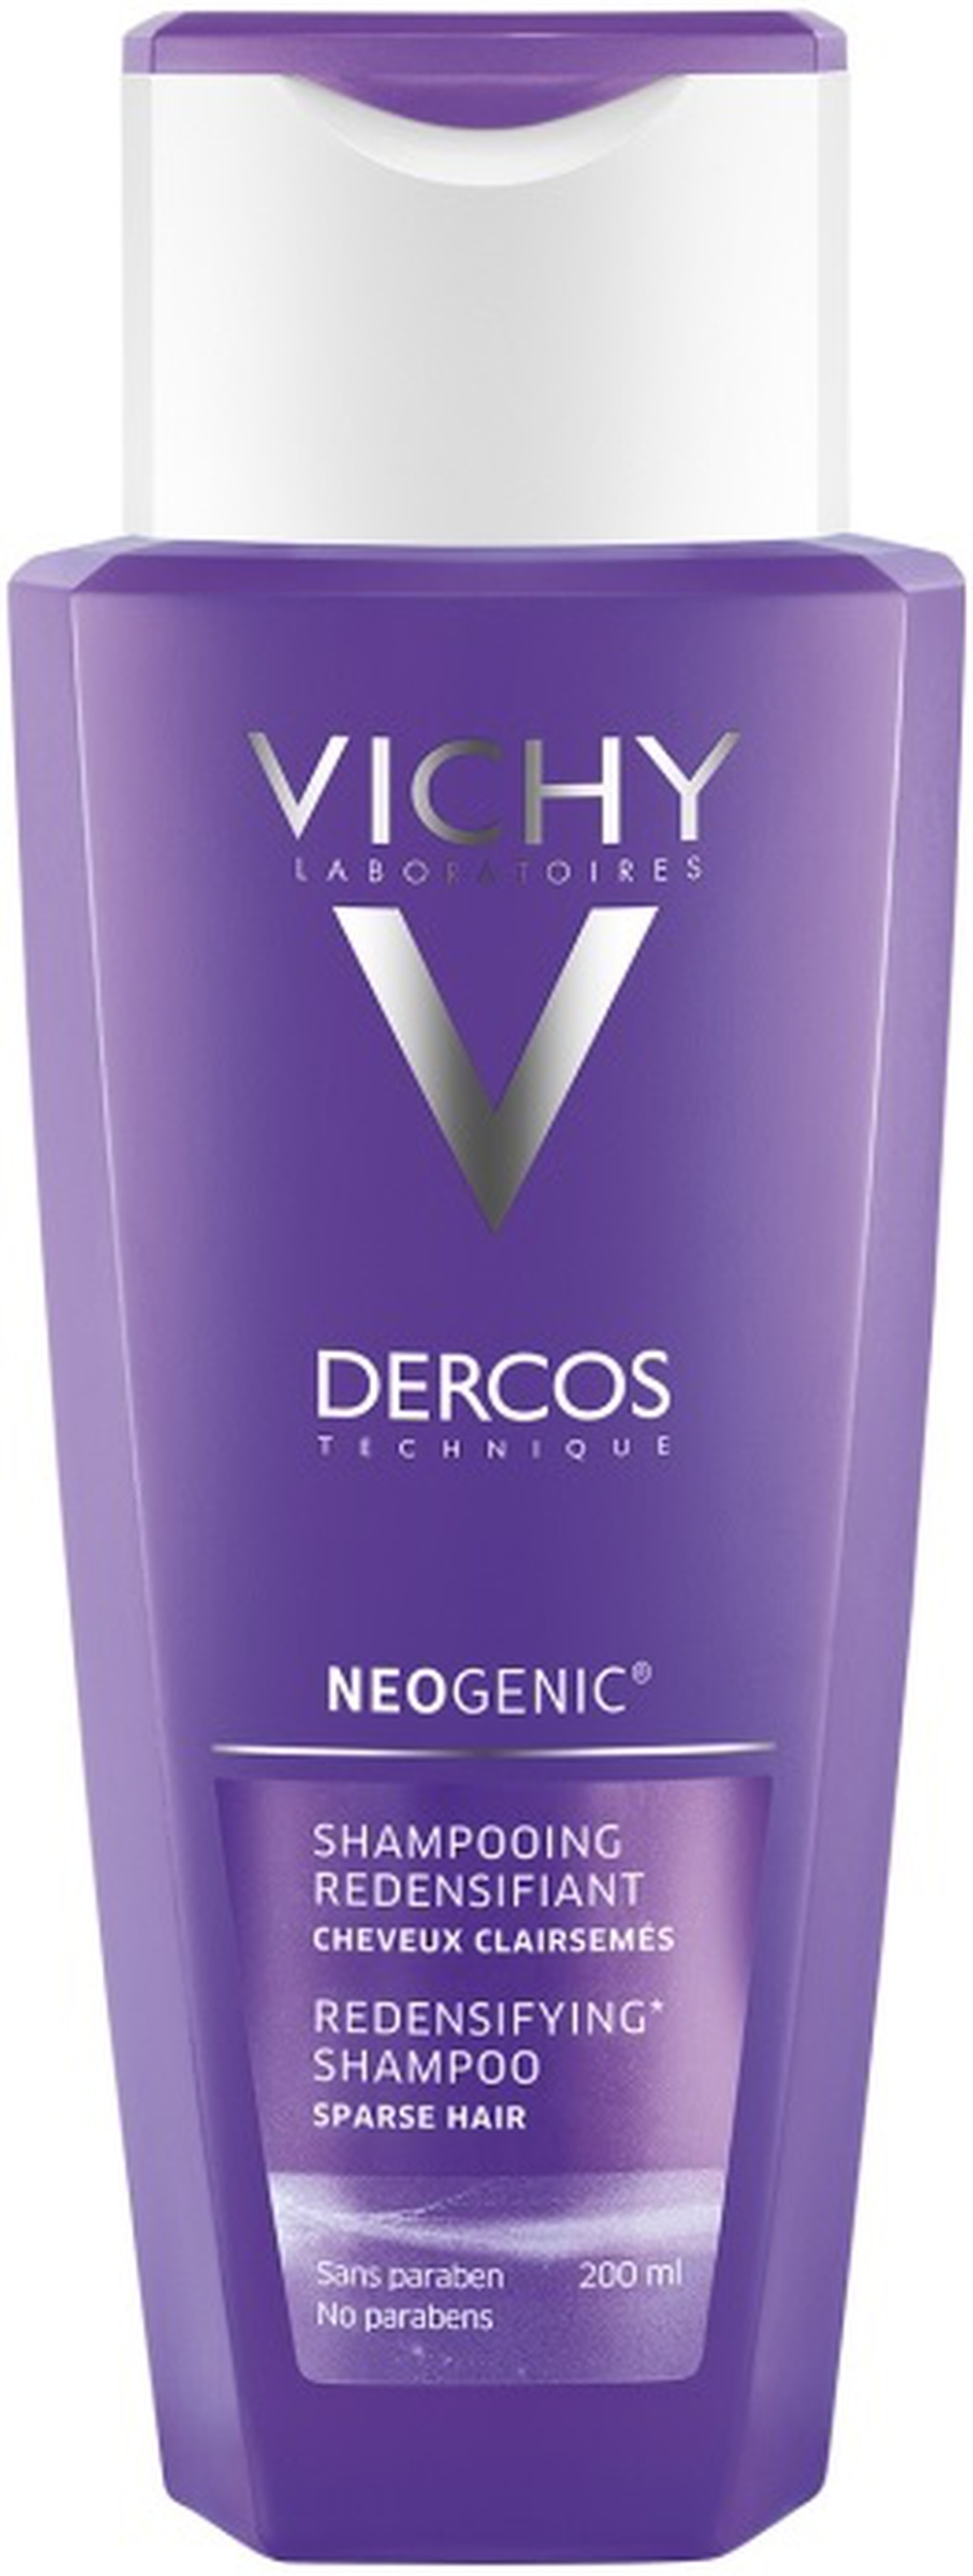 Vichy Neogenic шампунь для повышенной густоты волос, 200 мл фото